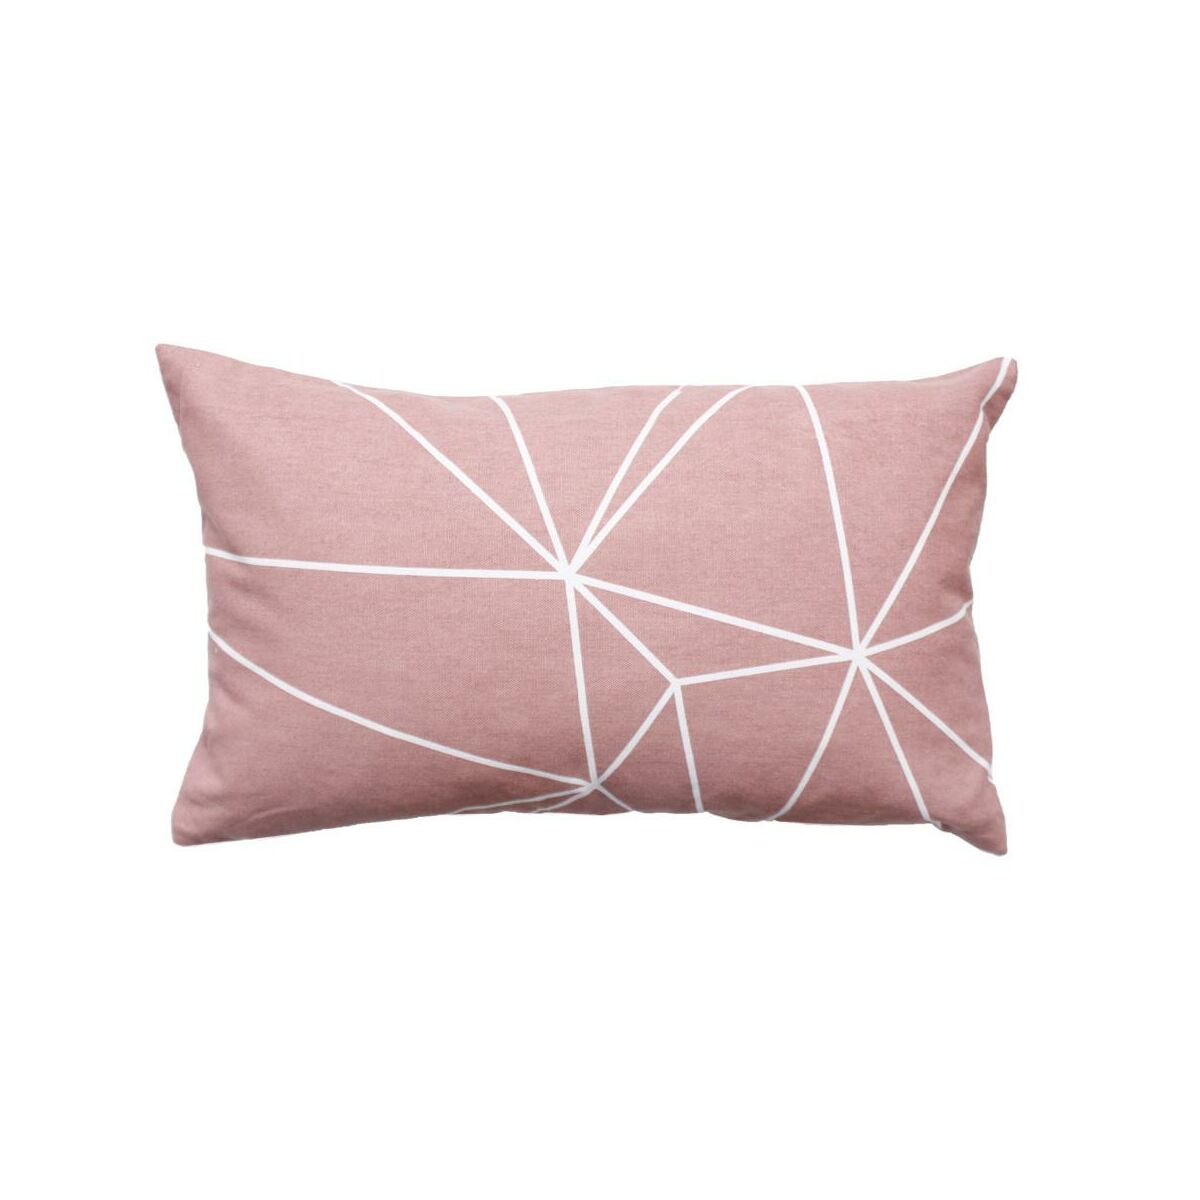 Poduszka bawełniana Vertos różowa 50 x 30 cm